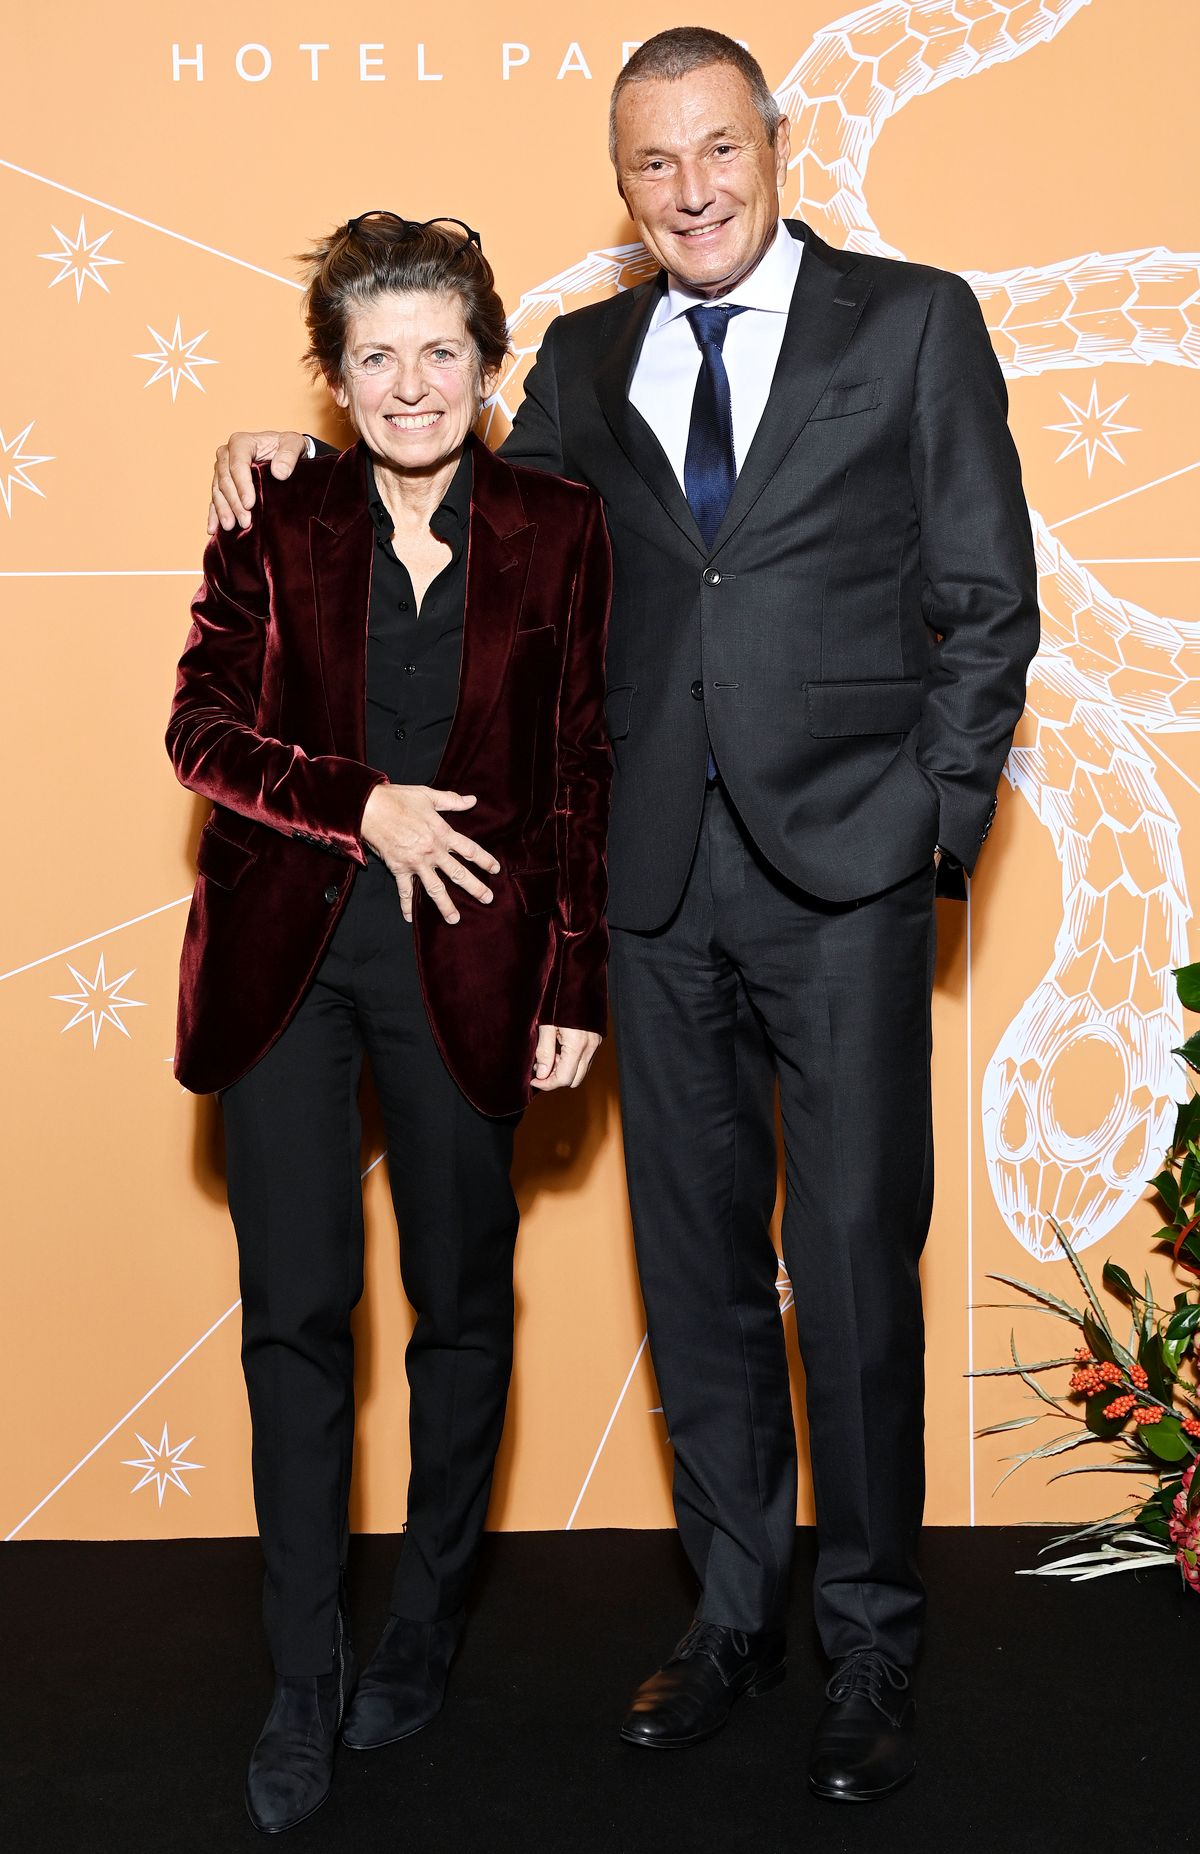 Патрисия Виель, Жан-Кристоф Бабен на открытии отеля Bvlgari в Париже, 1 декабря 2021 г.